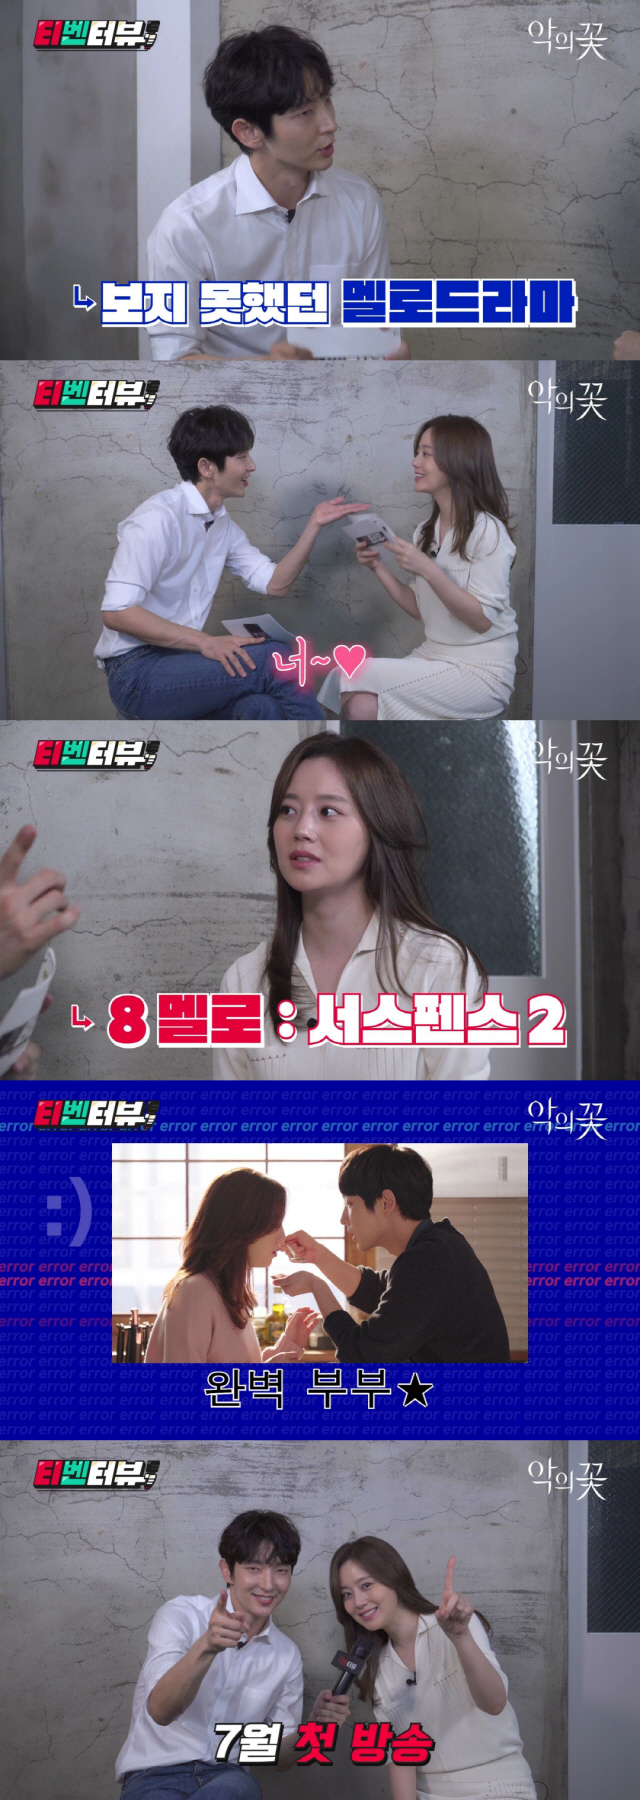 /사진= tvN ‘악의 꽃’ 티벤터뷰 영상 캡처